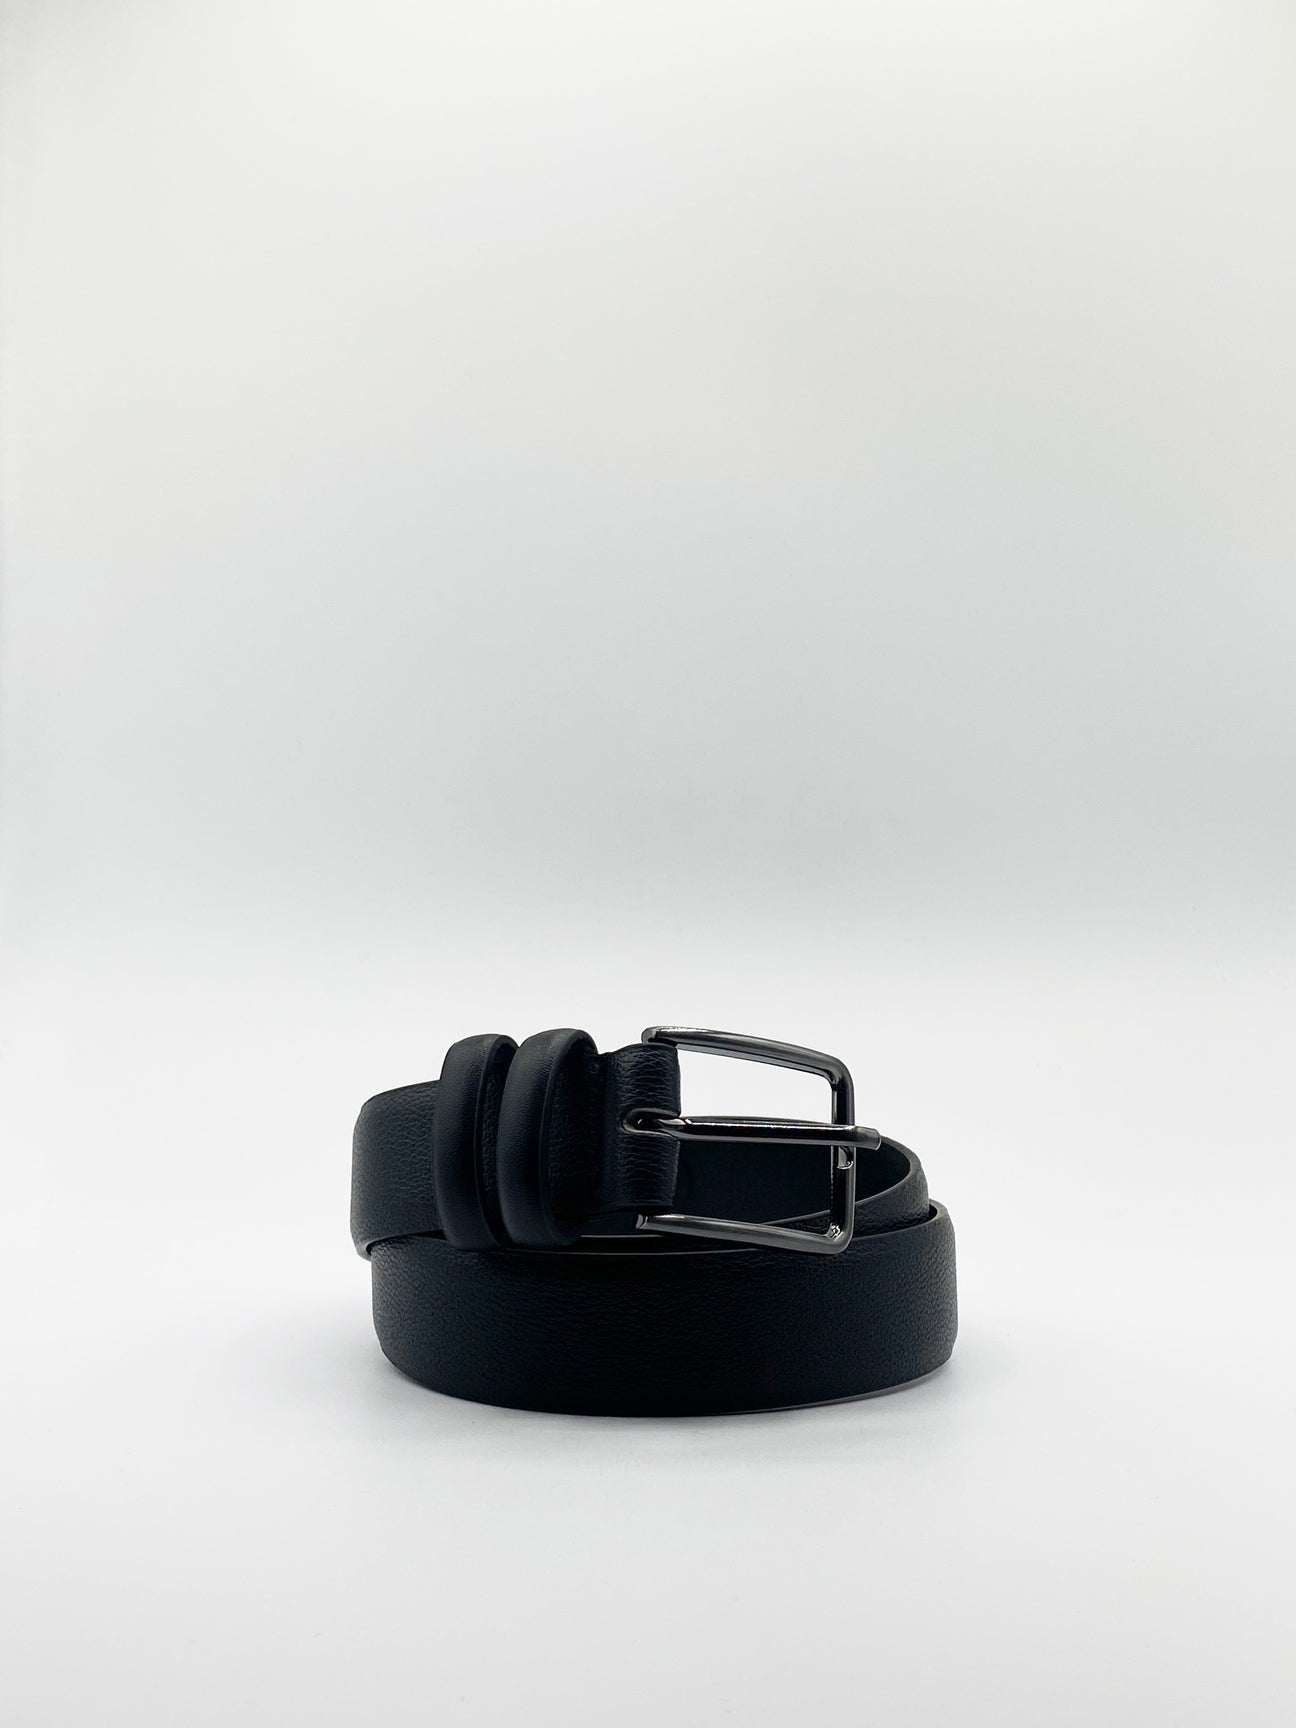 PU Leather Belt In Black